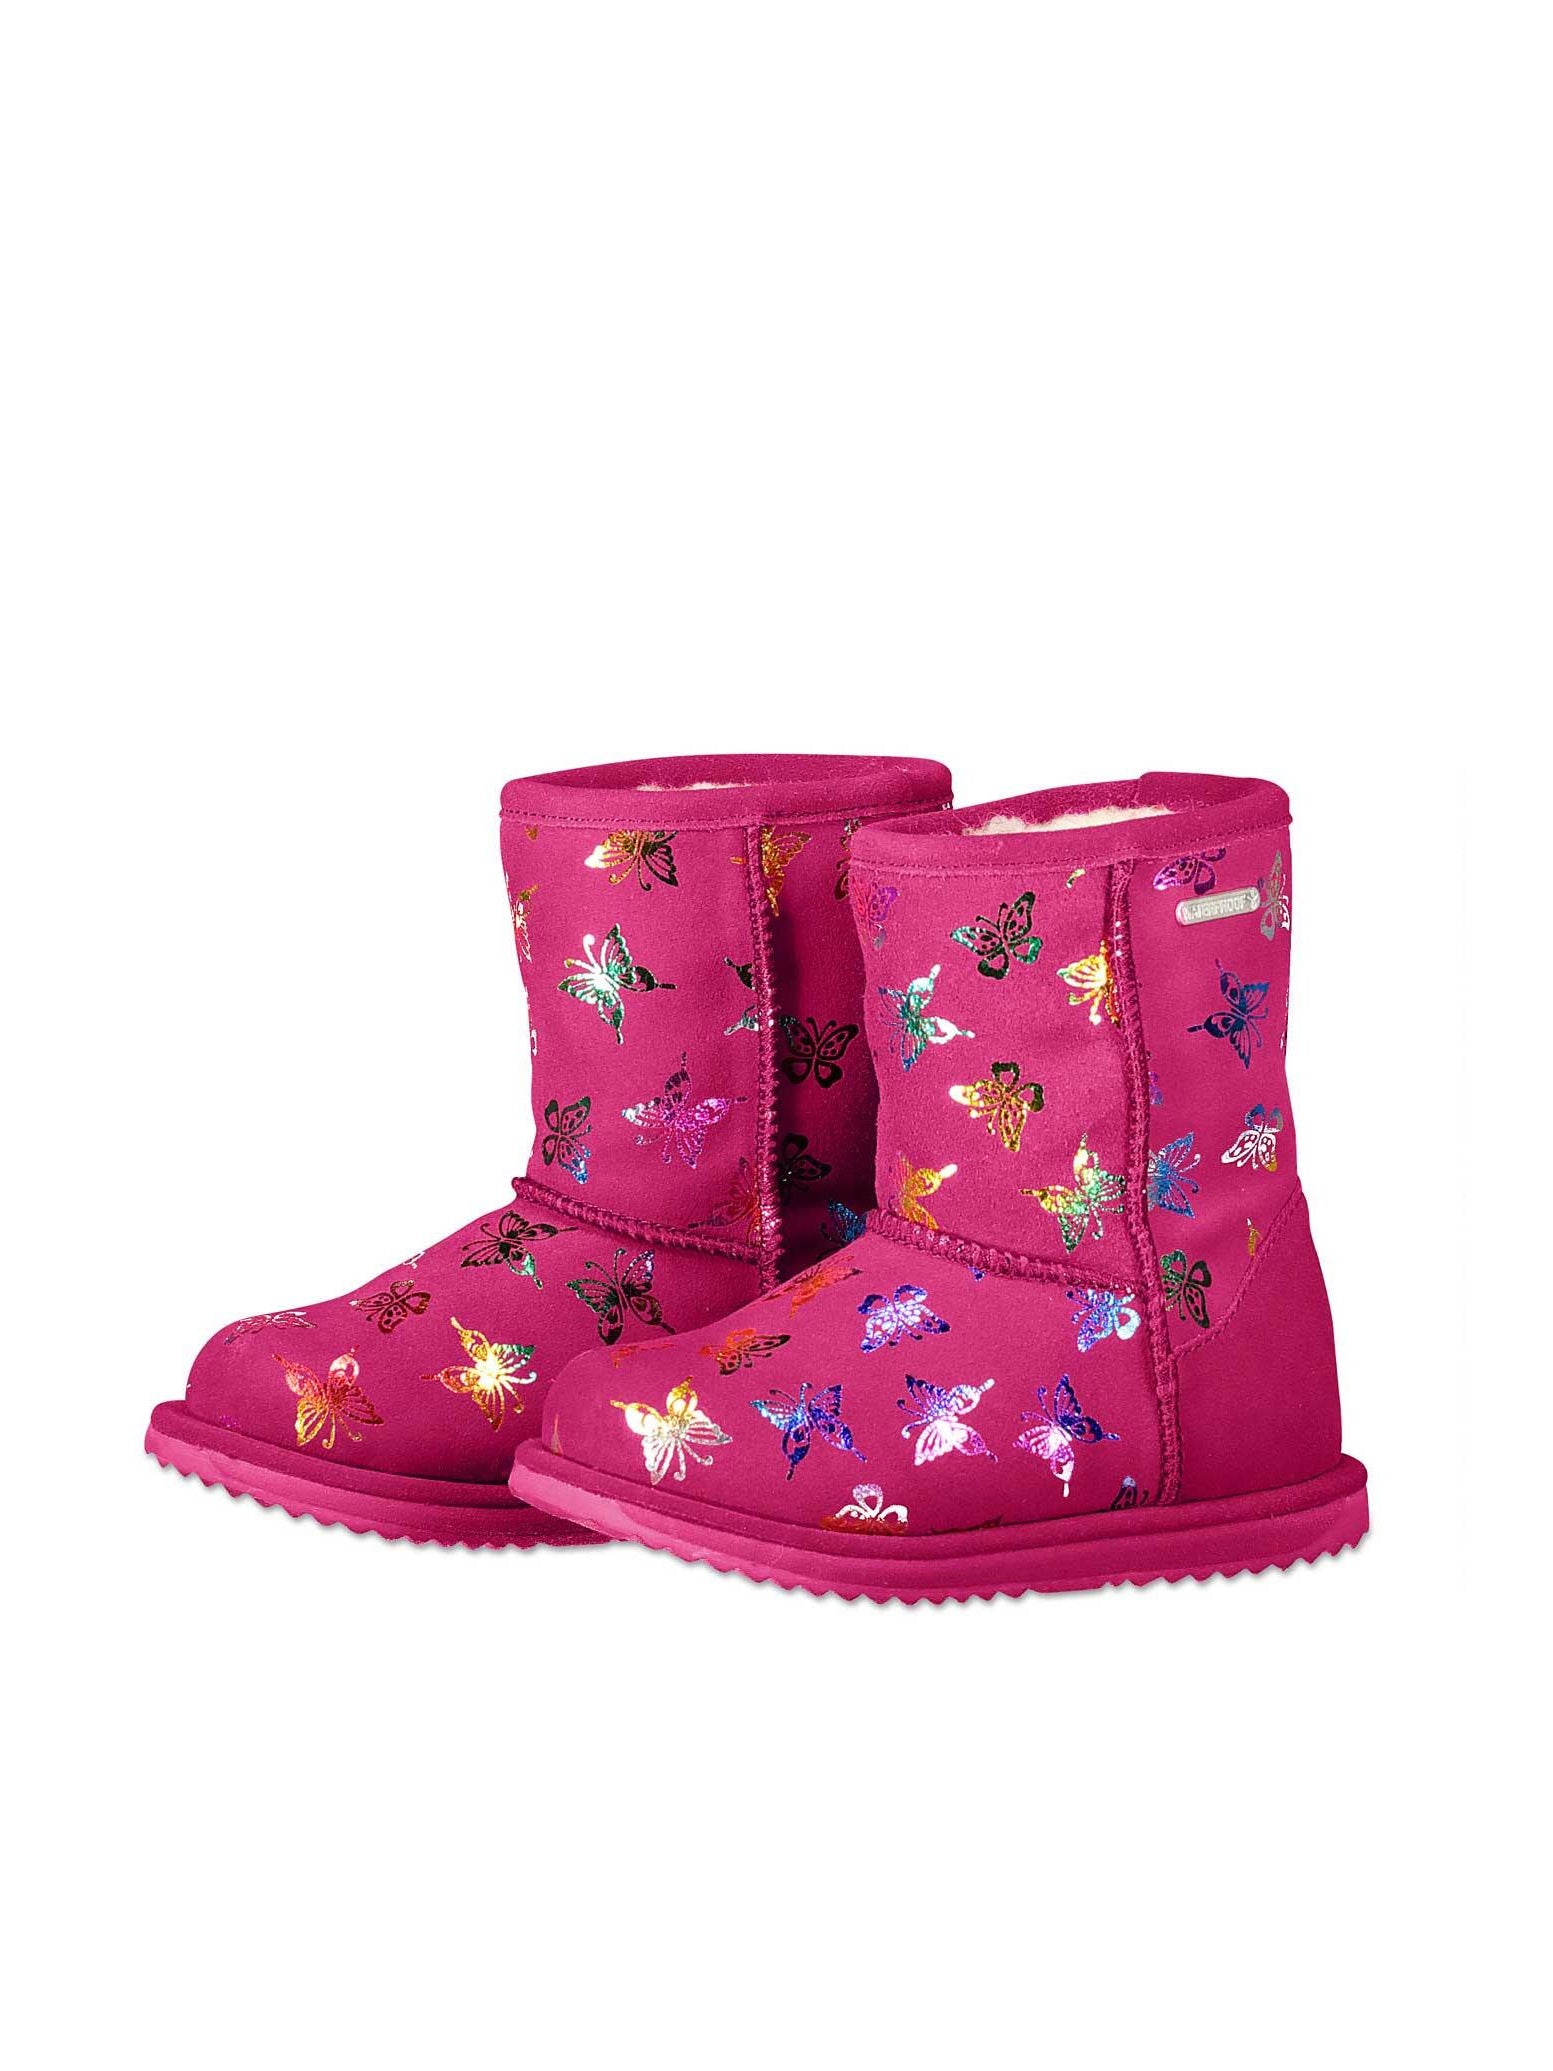 girls emu boots